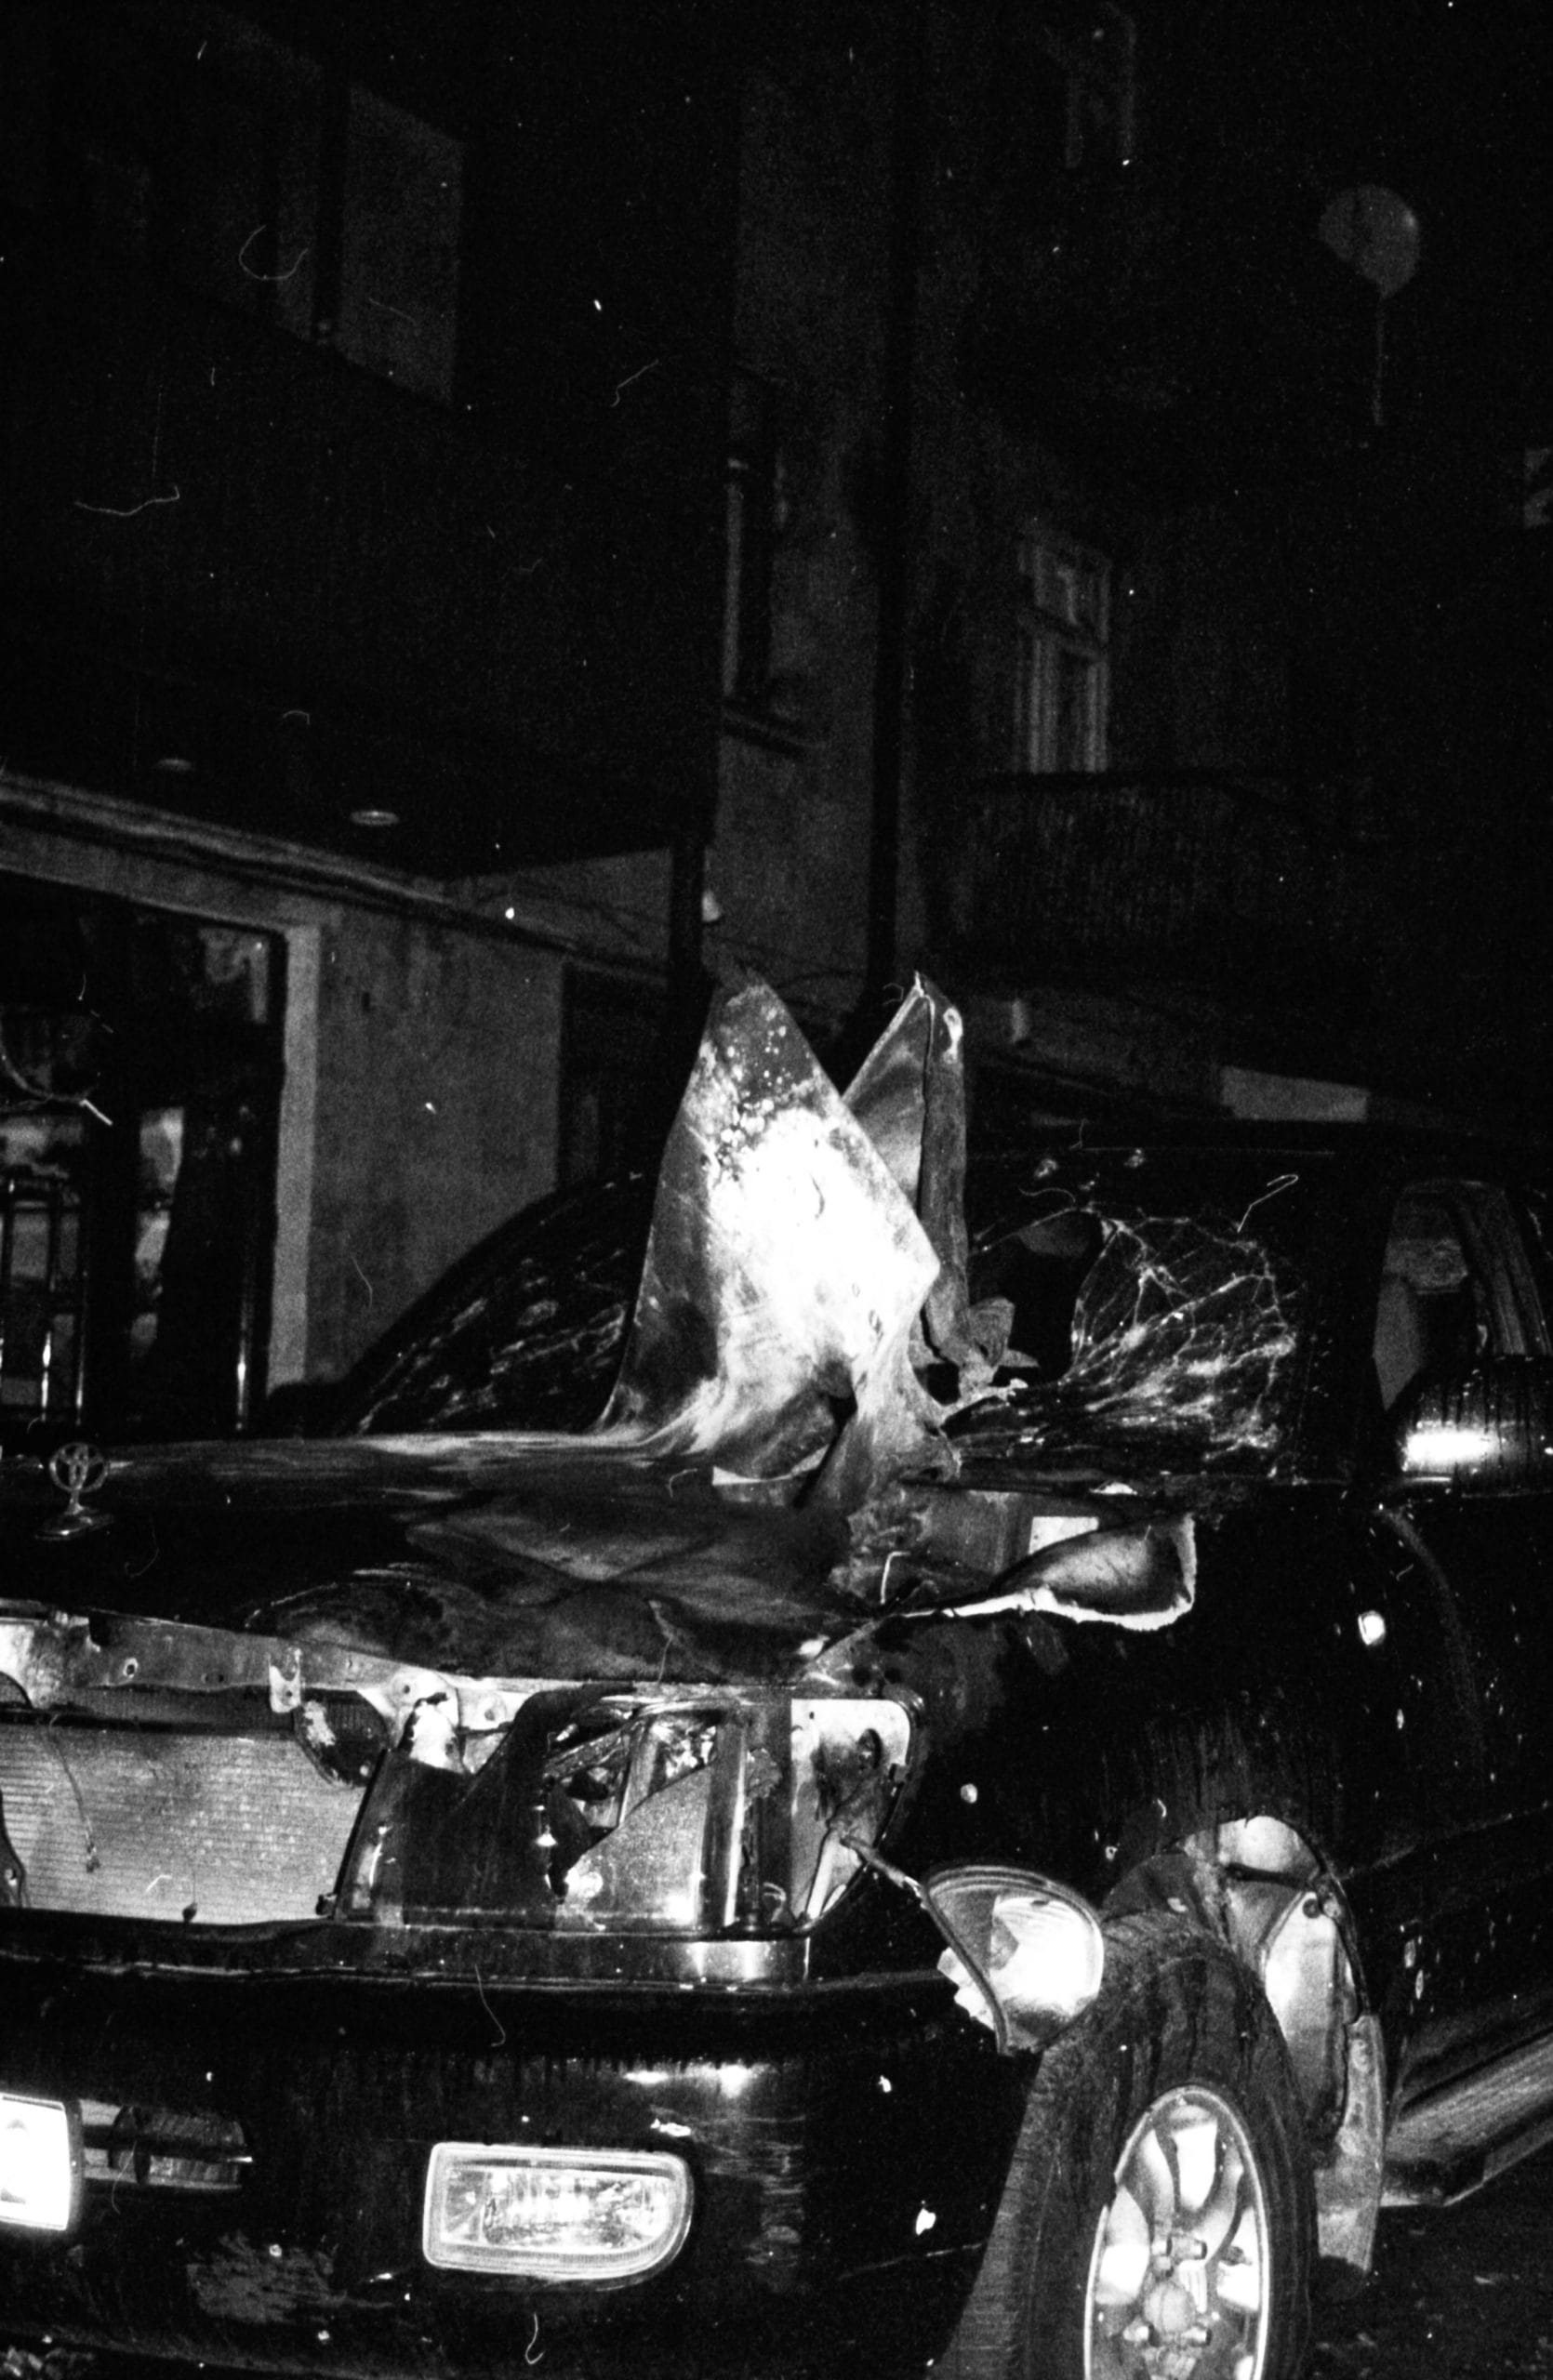 Photo en noir et blanc, très obscure, mis à part l'avant qui est illuminée : il s'agit d'une voiture détruite qui a probablement été touchée par un projectile